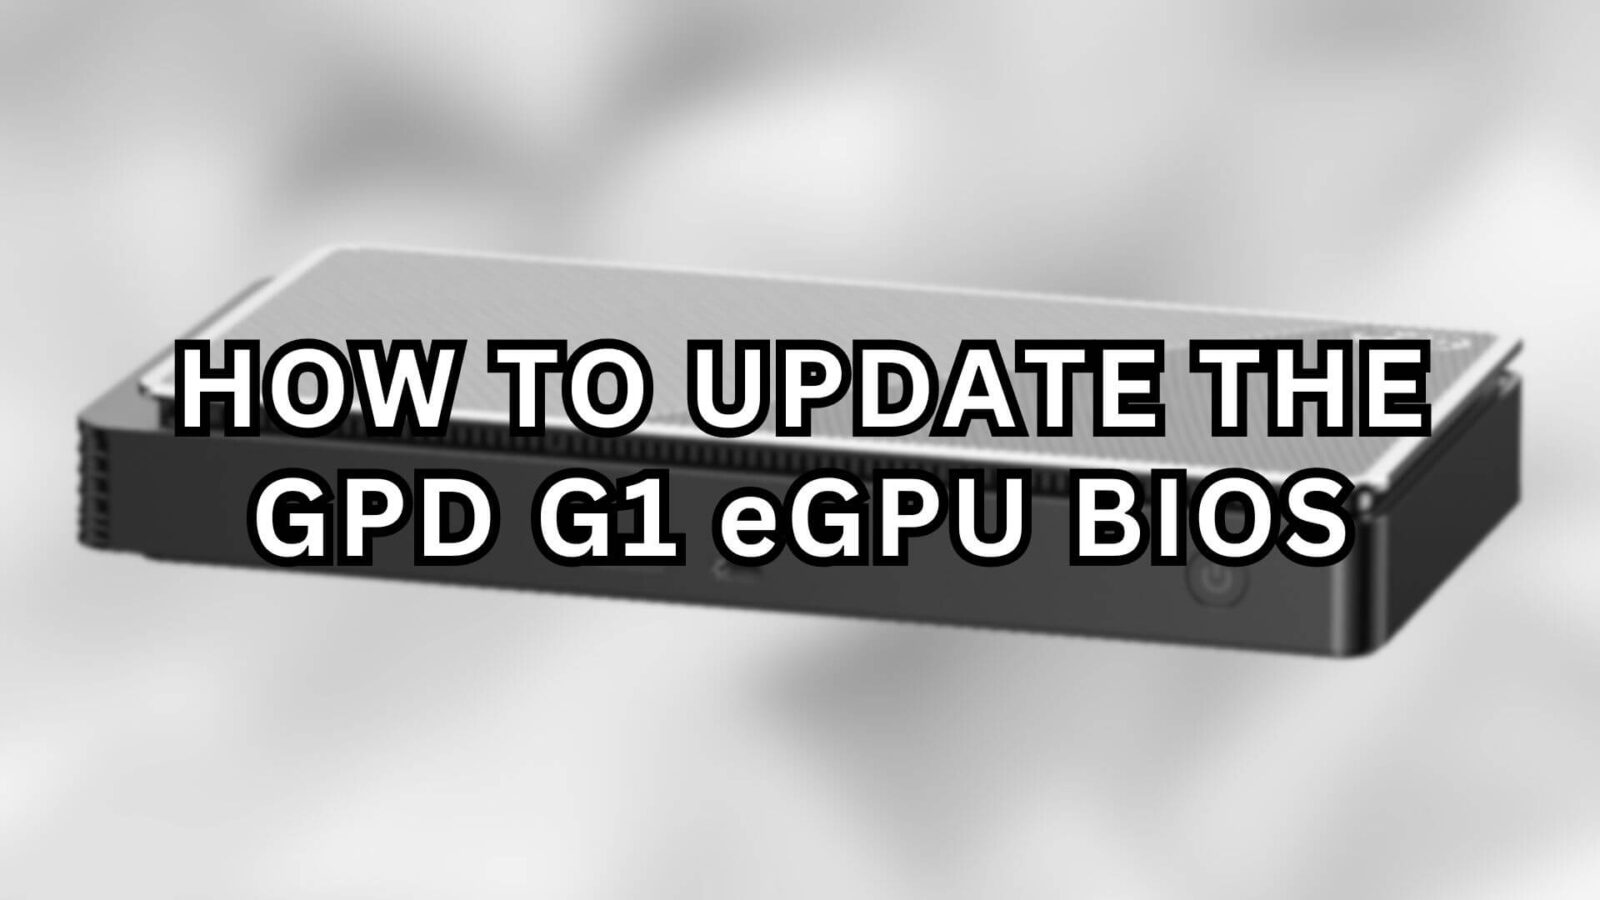 How to update the GPD G1 eGPU BIOS